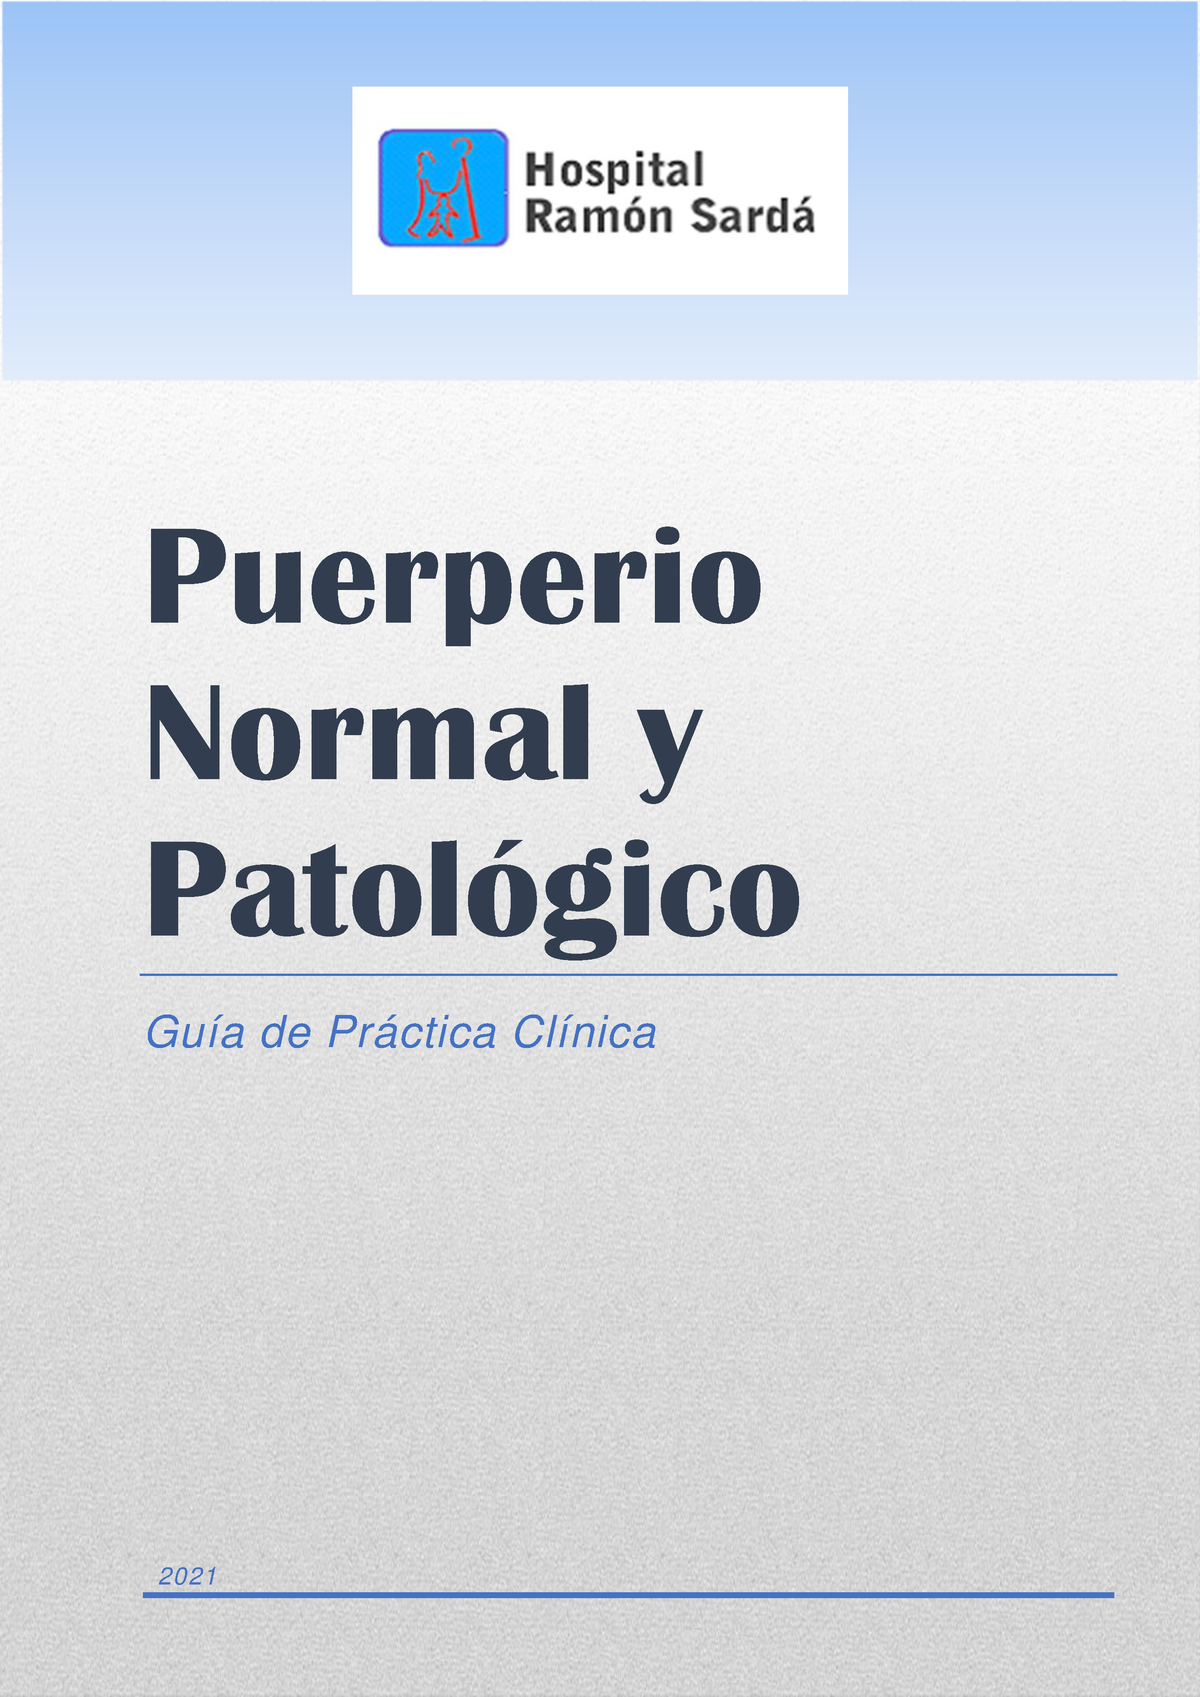 Guia De Practica Clinica De Puerperio Normal Y Patologico Puerperio Normal Y PatolÛgico Guía 